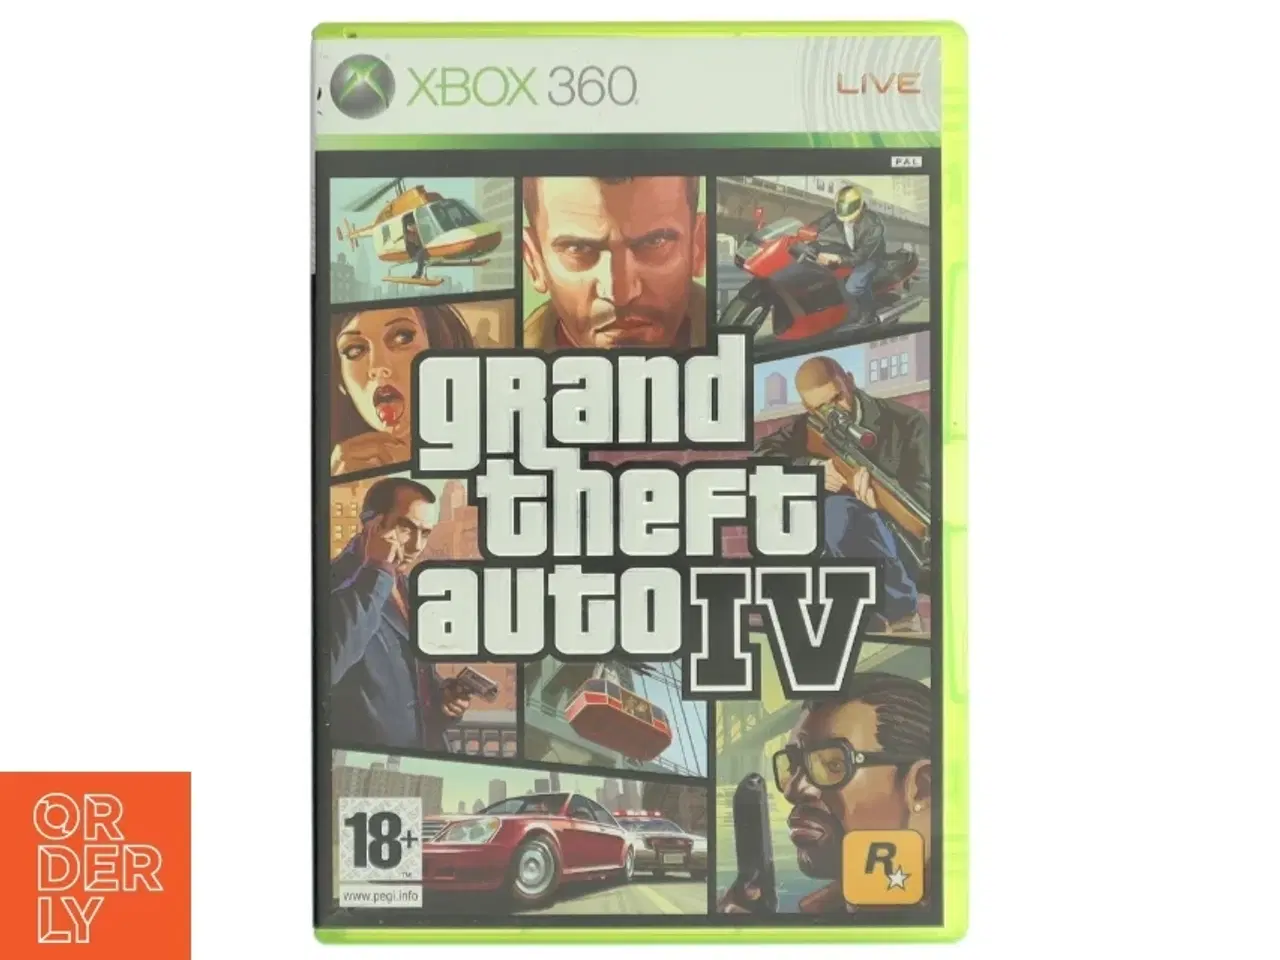 Billede 1 - Grand Theft Auto IV Xbox 360 spil fra Rockstar Games